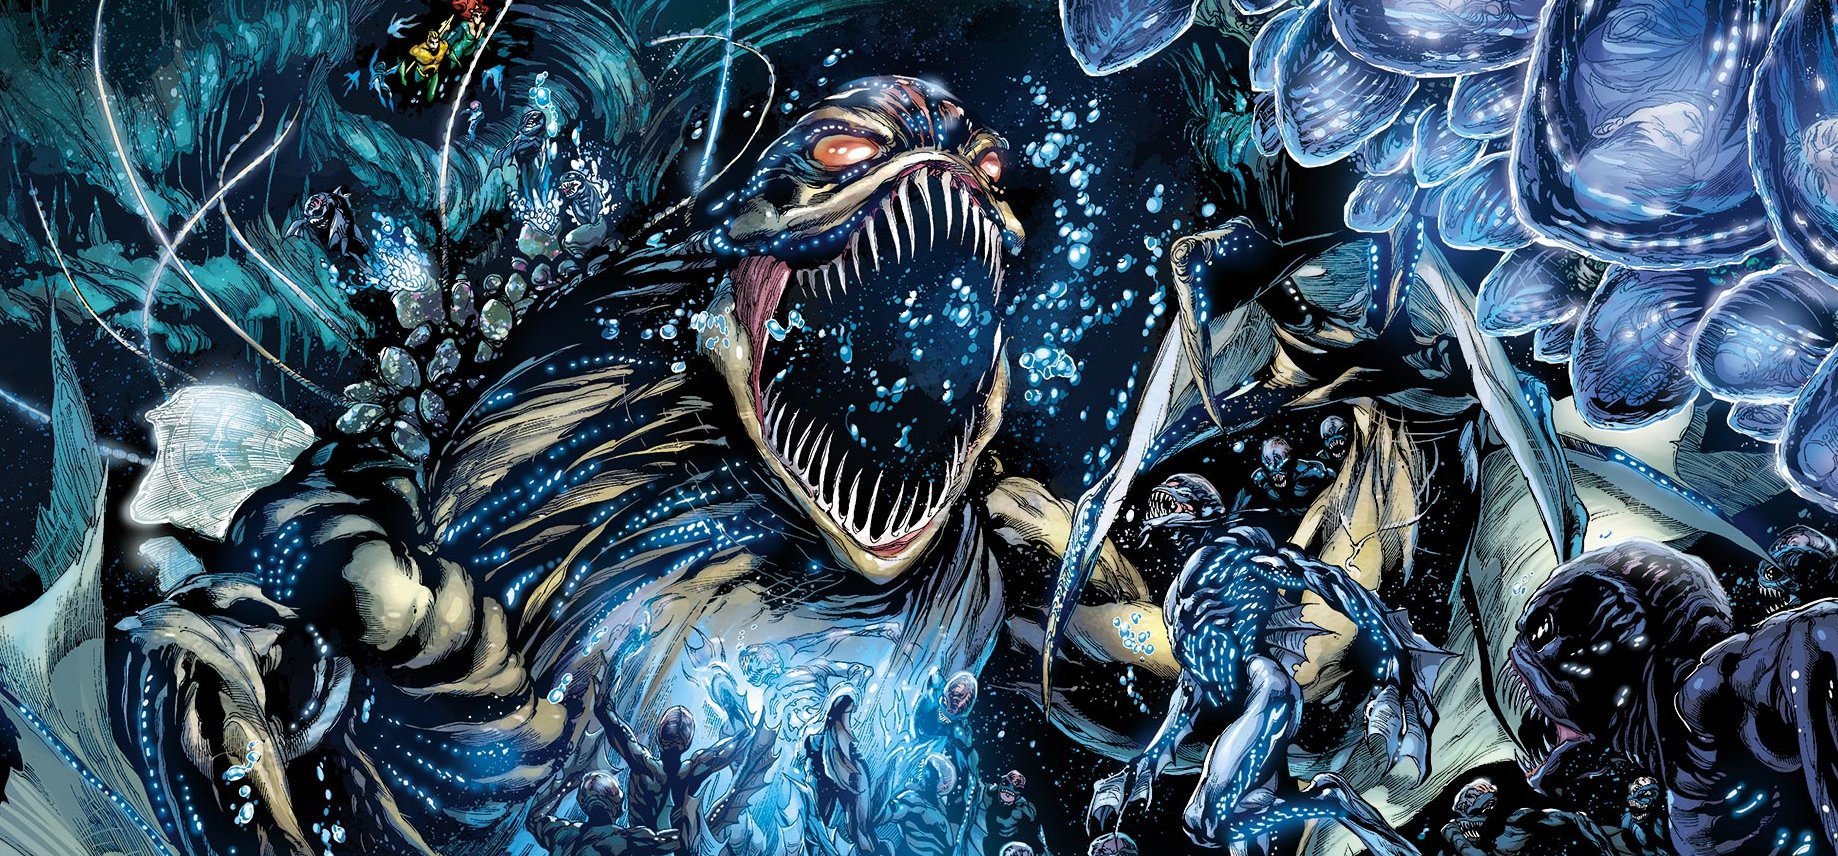 Spin-off rész készül az Aquamanből, ráadásul horror kategóriában